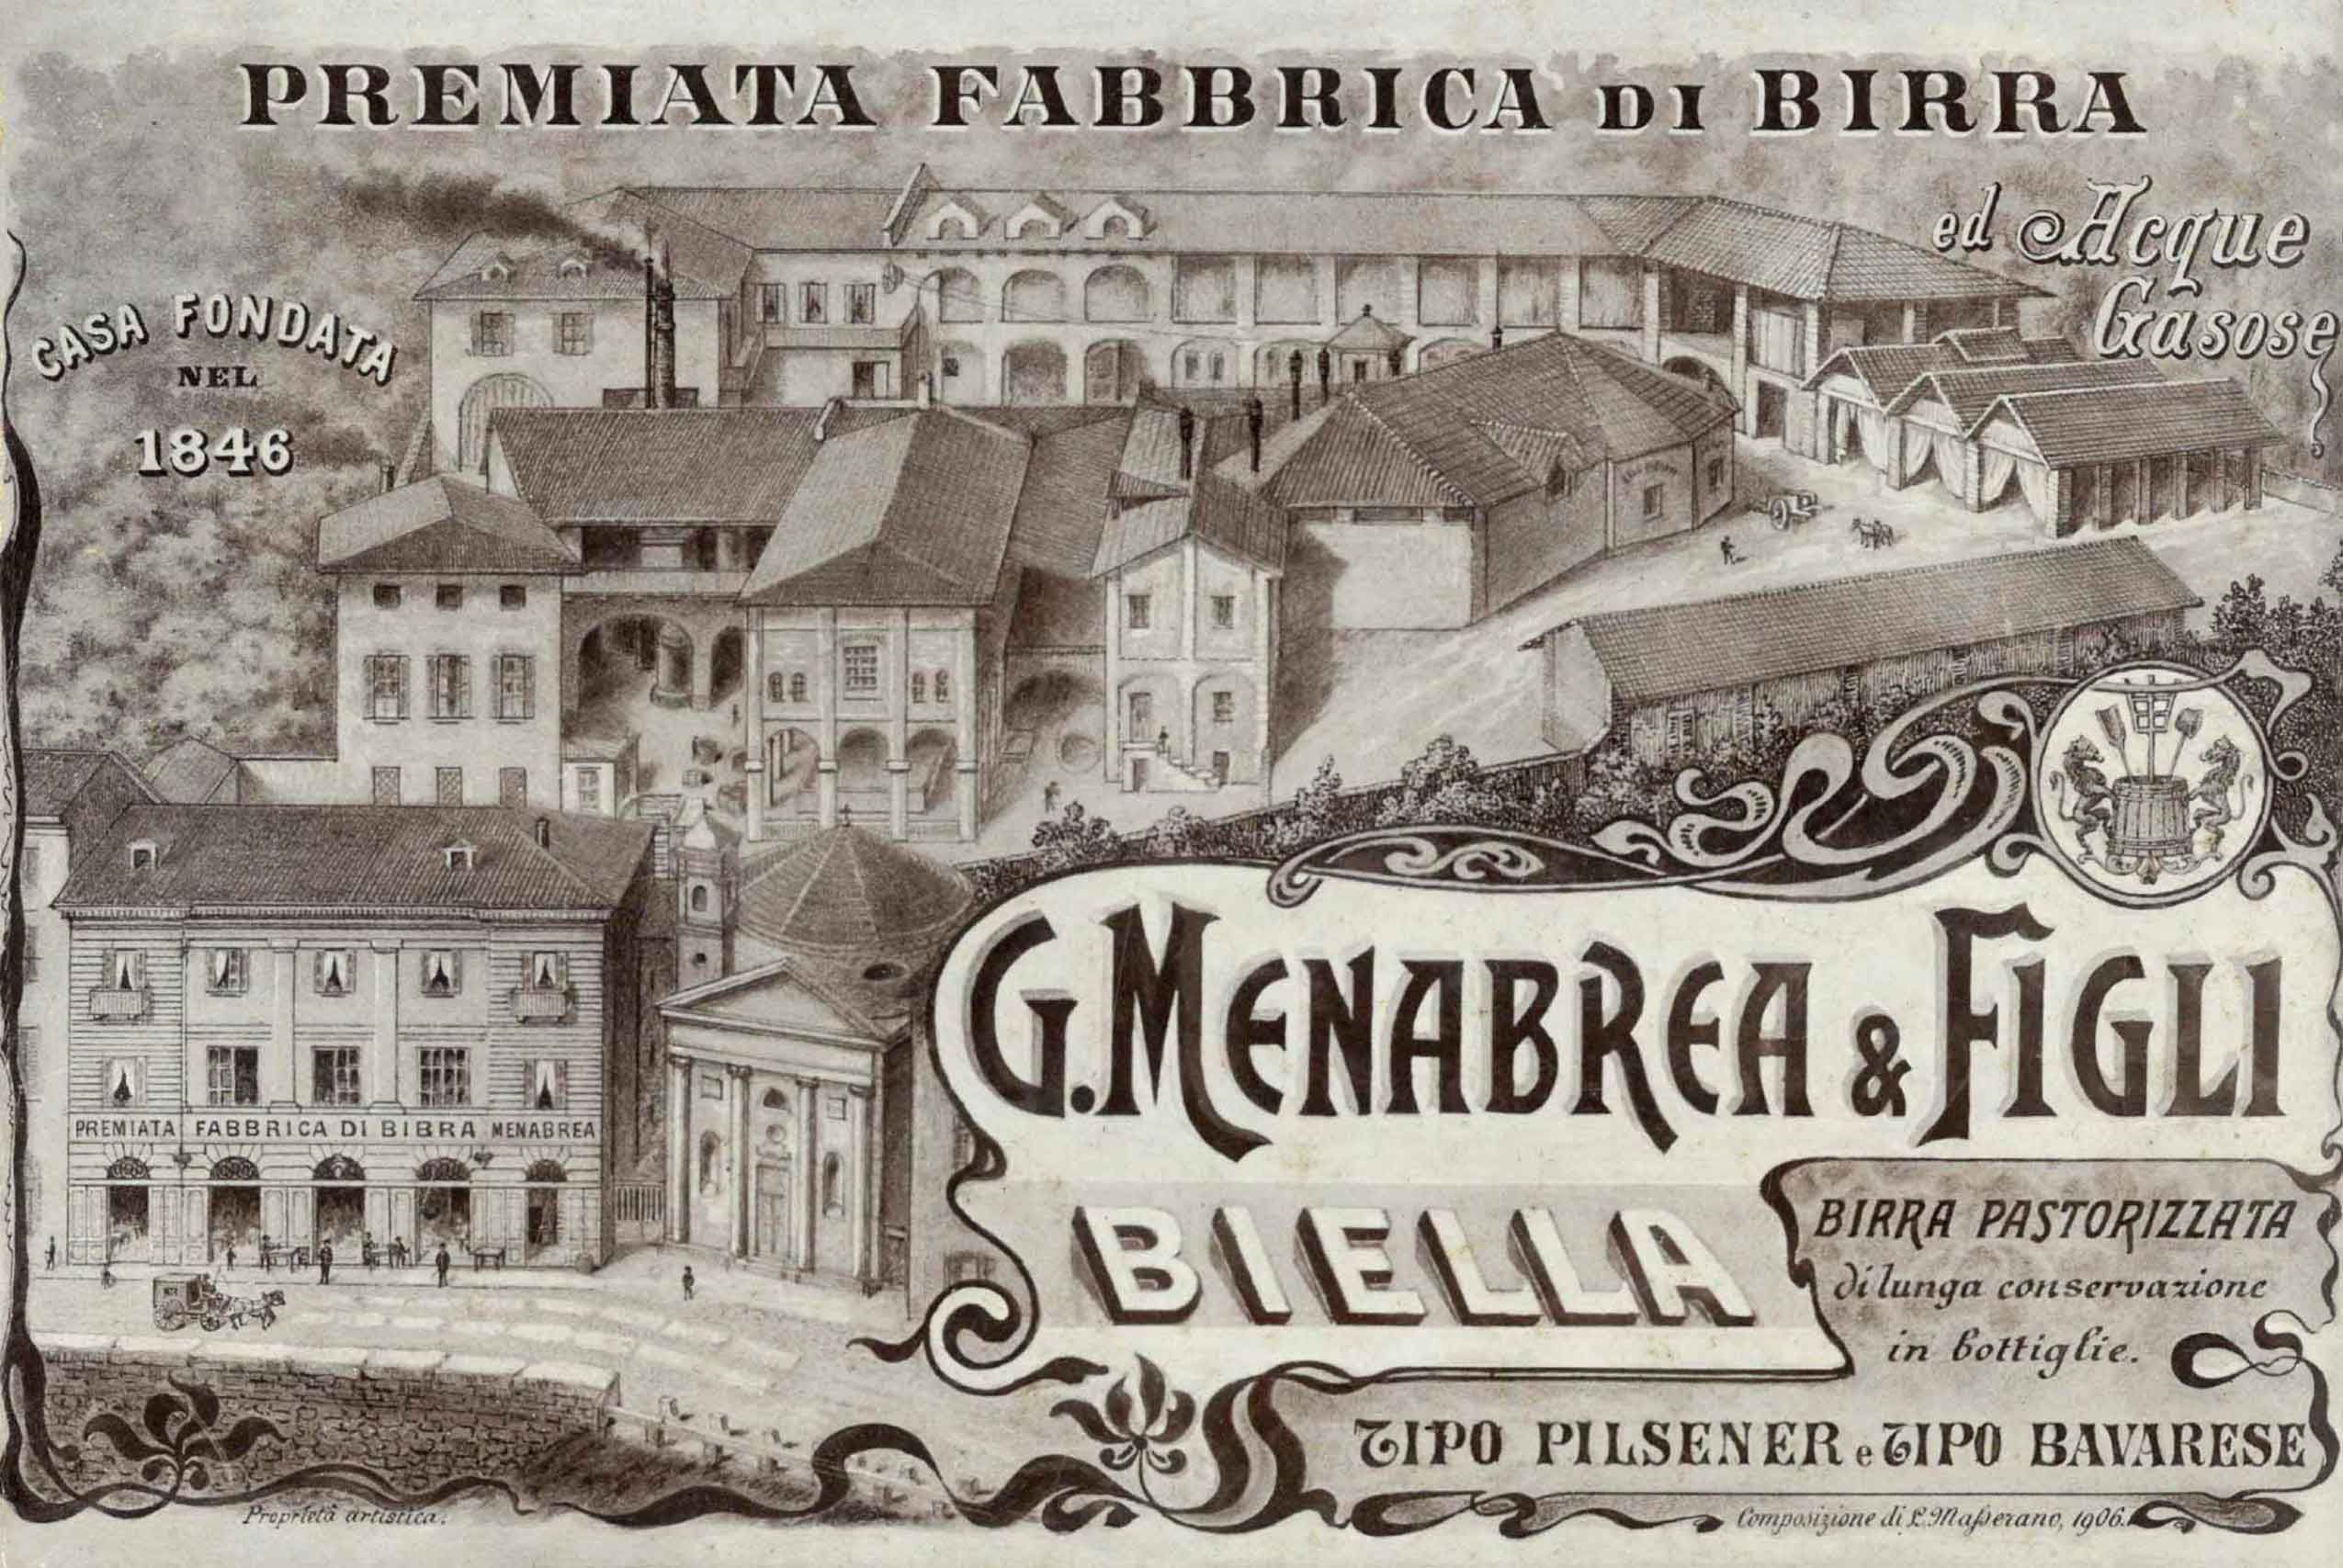 Il Birrificio Menabrea 1846 Immagine Storica 2